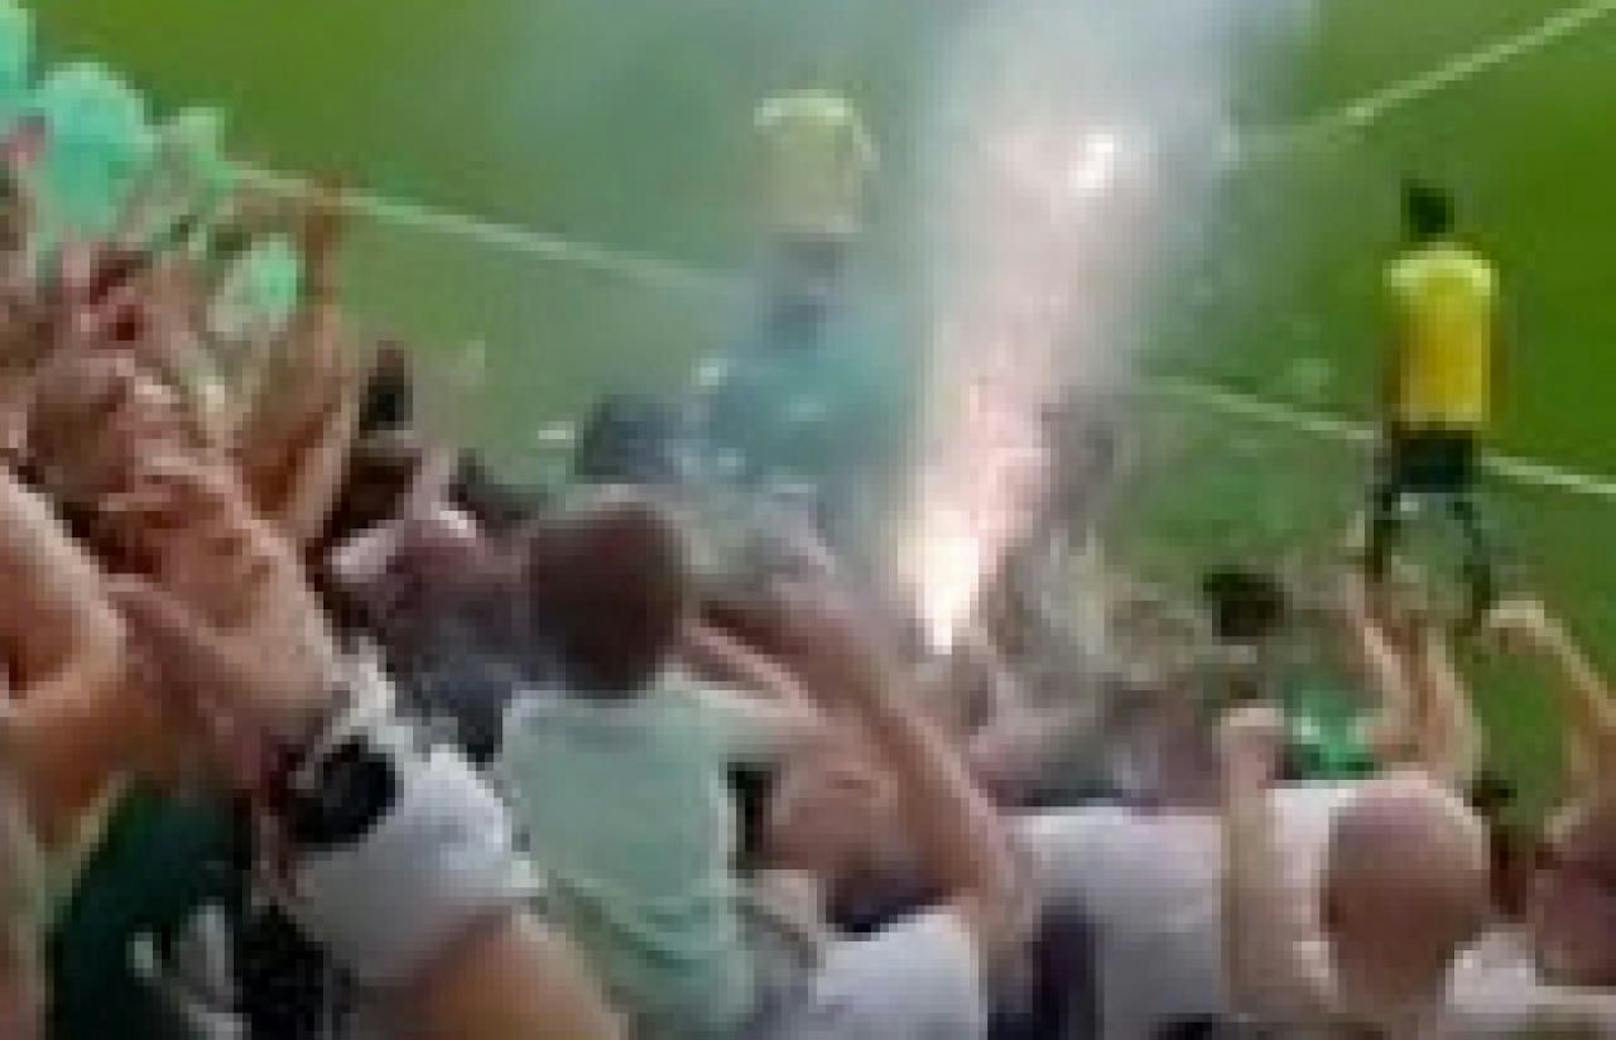 Ein Kind hält eine Blendgranate im Ferencvaros-Stadion  kurz darauf explodiert das Gerät